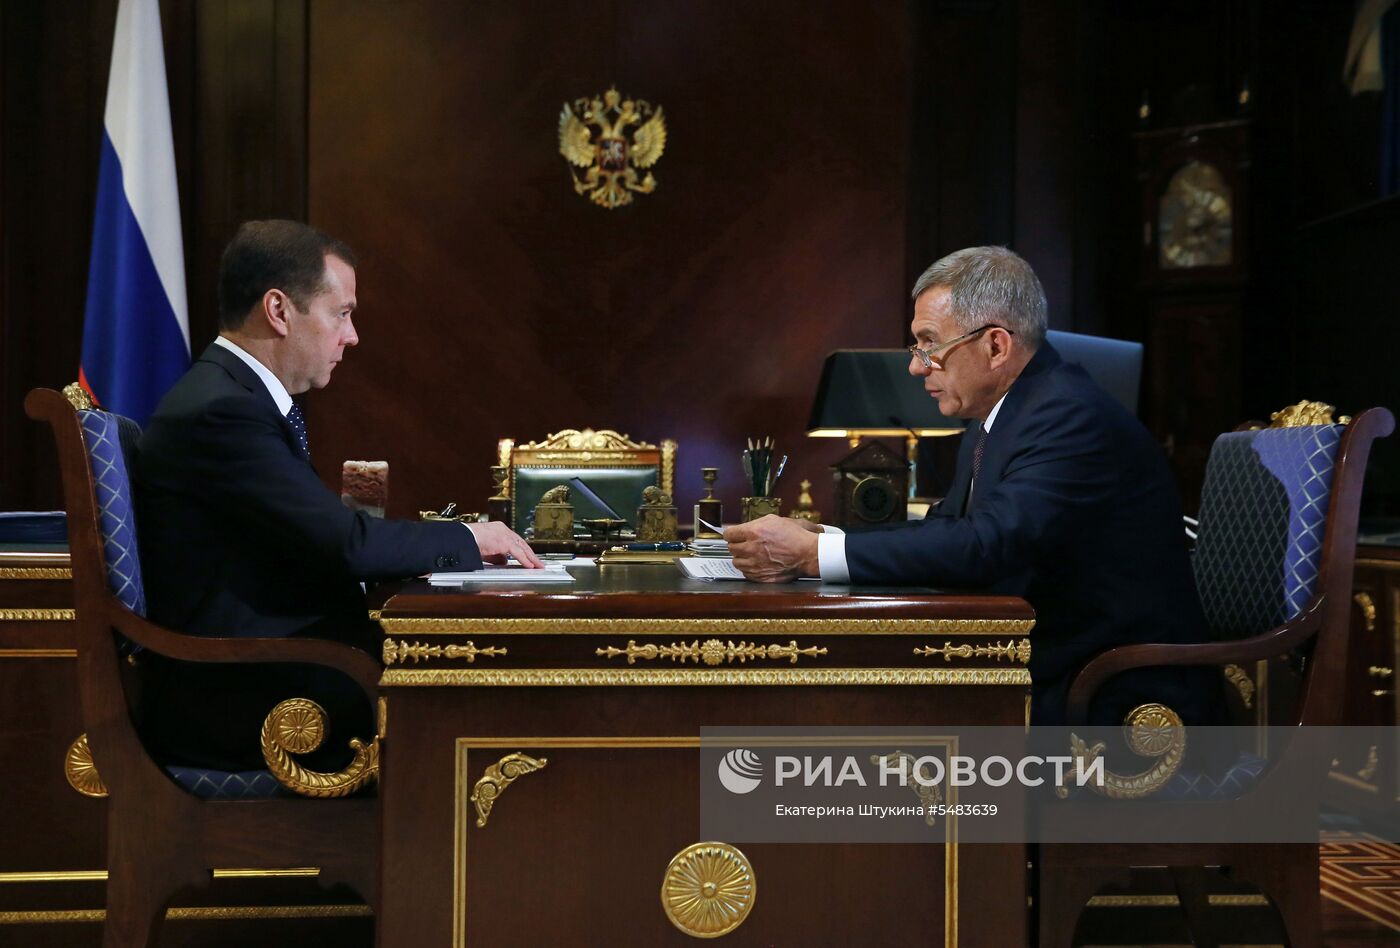  Премьер-министр РФ Д. Медведев встретился с президентом Республики Татарстан Р. Миннихановым 